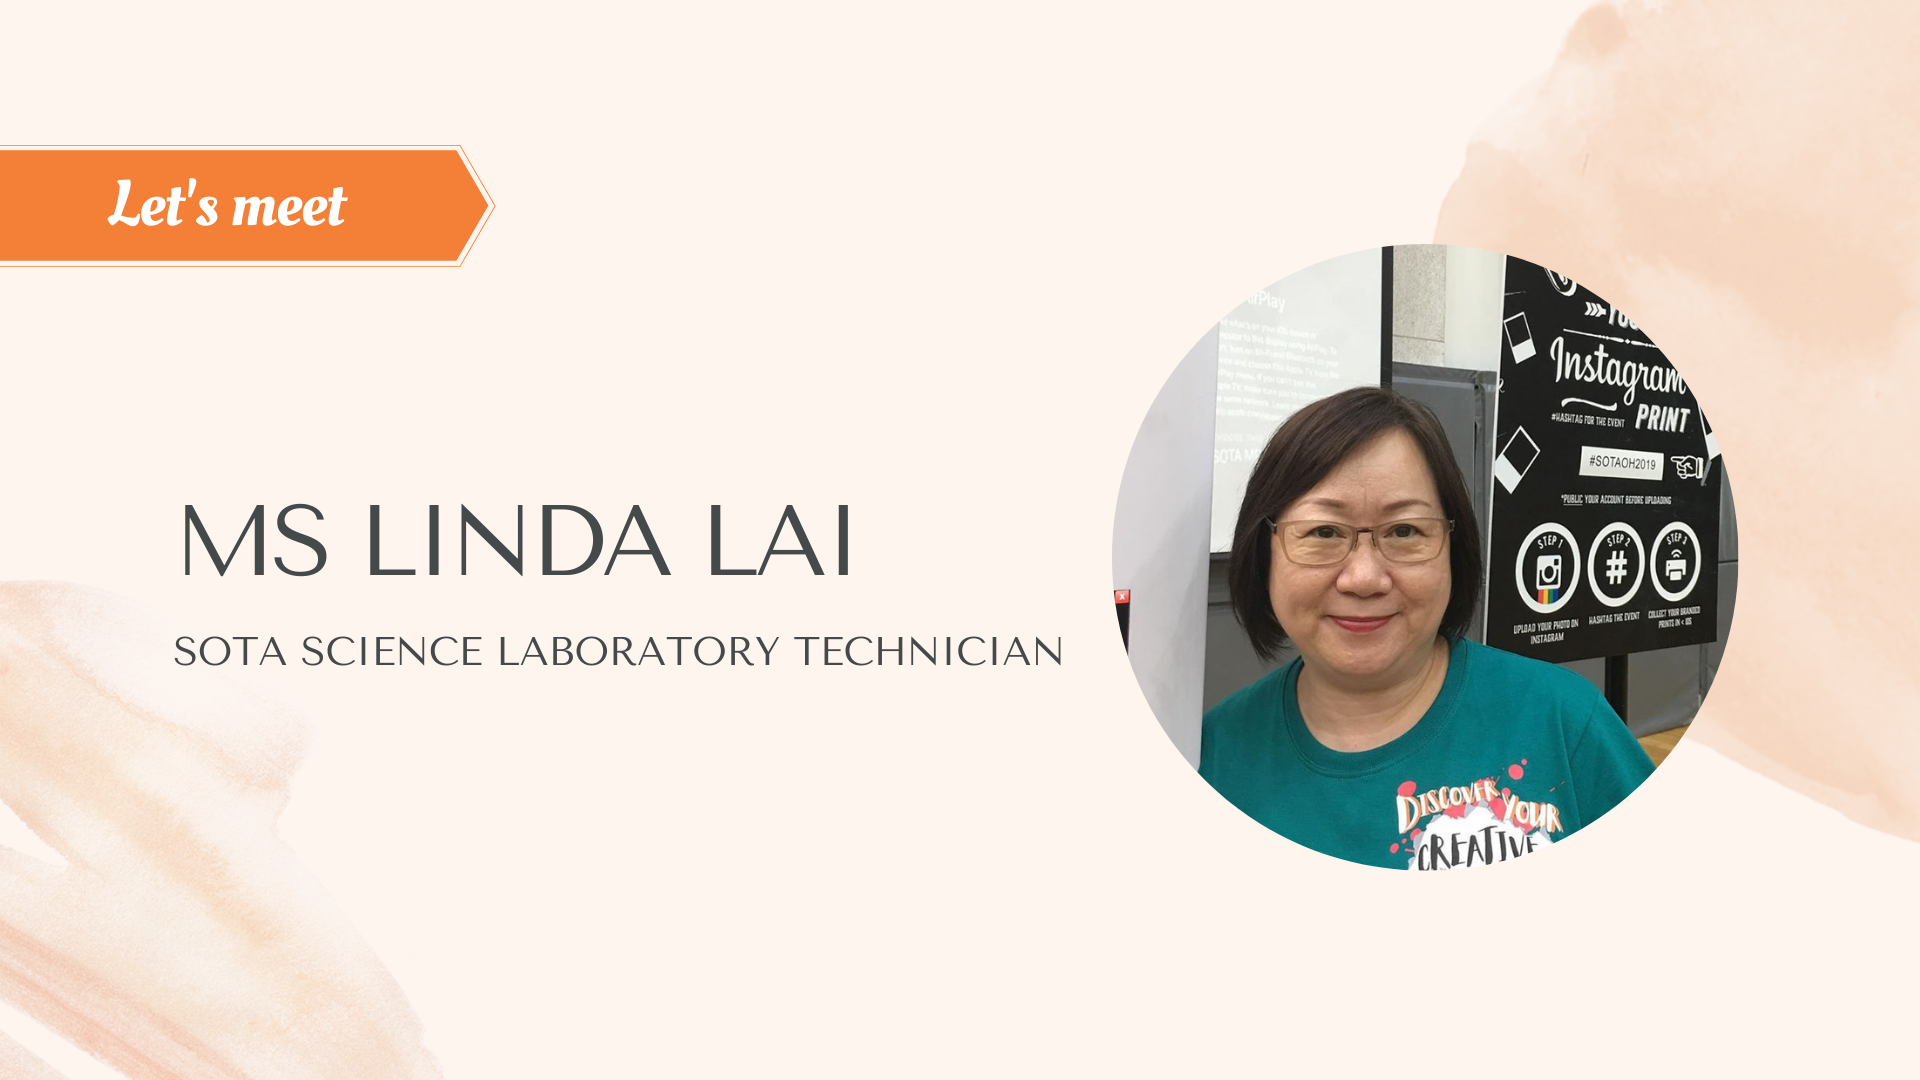 Let's meet - Ms Linda Lai